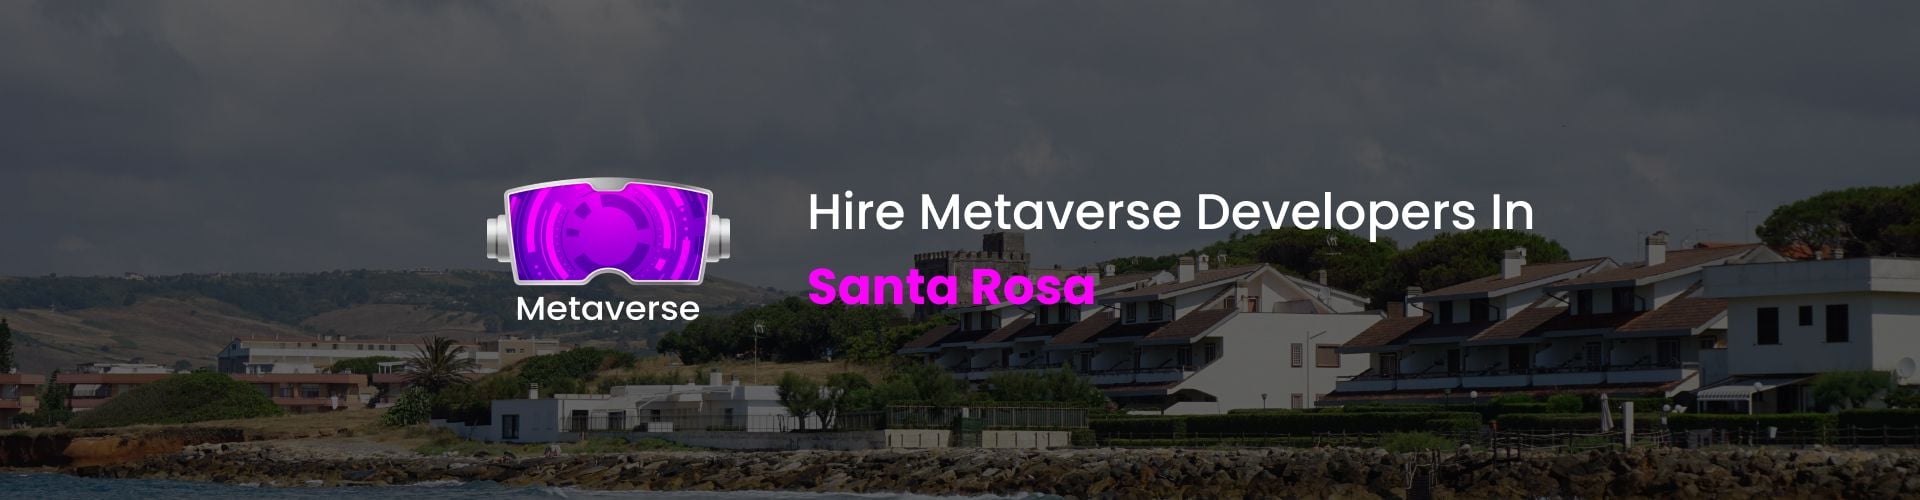 hire metaverse developers in santa rosa